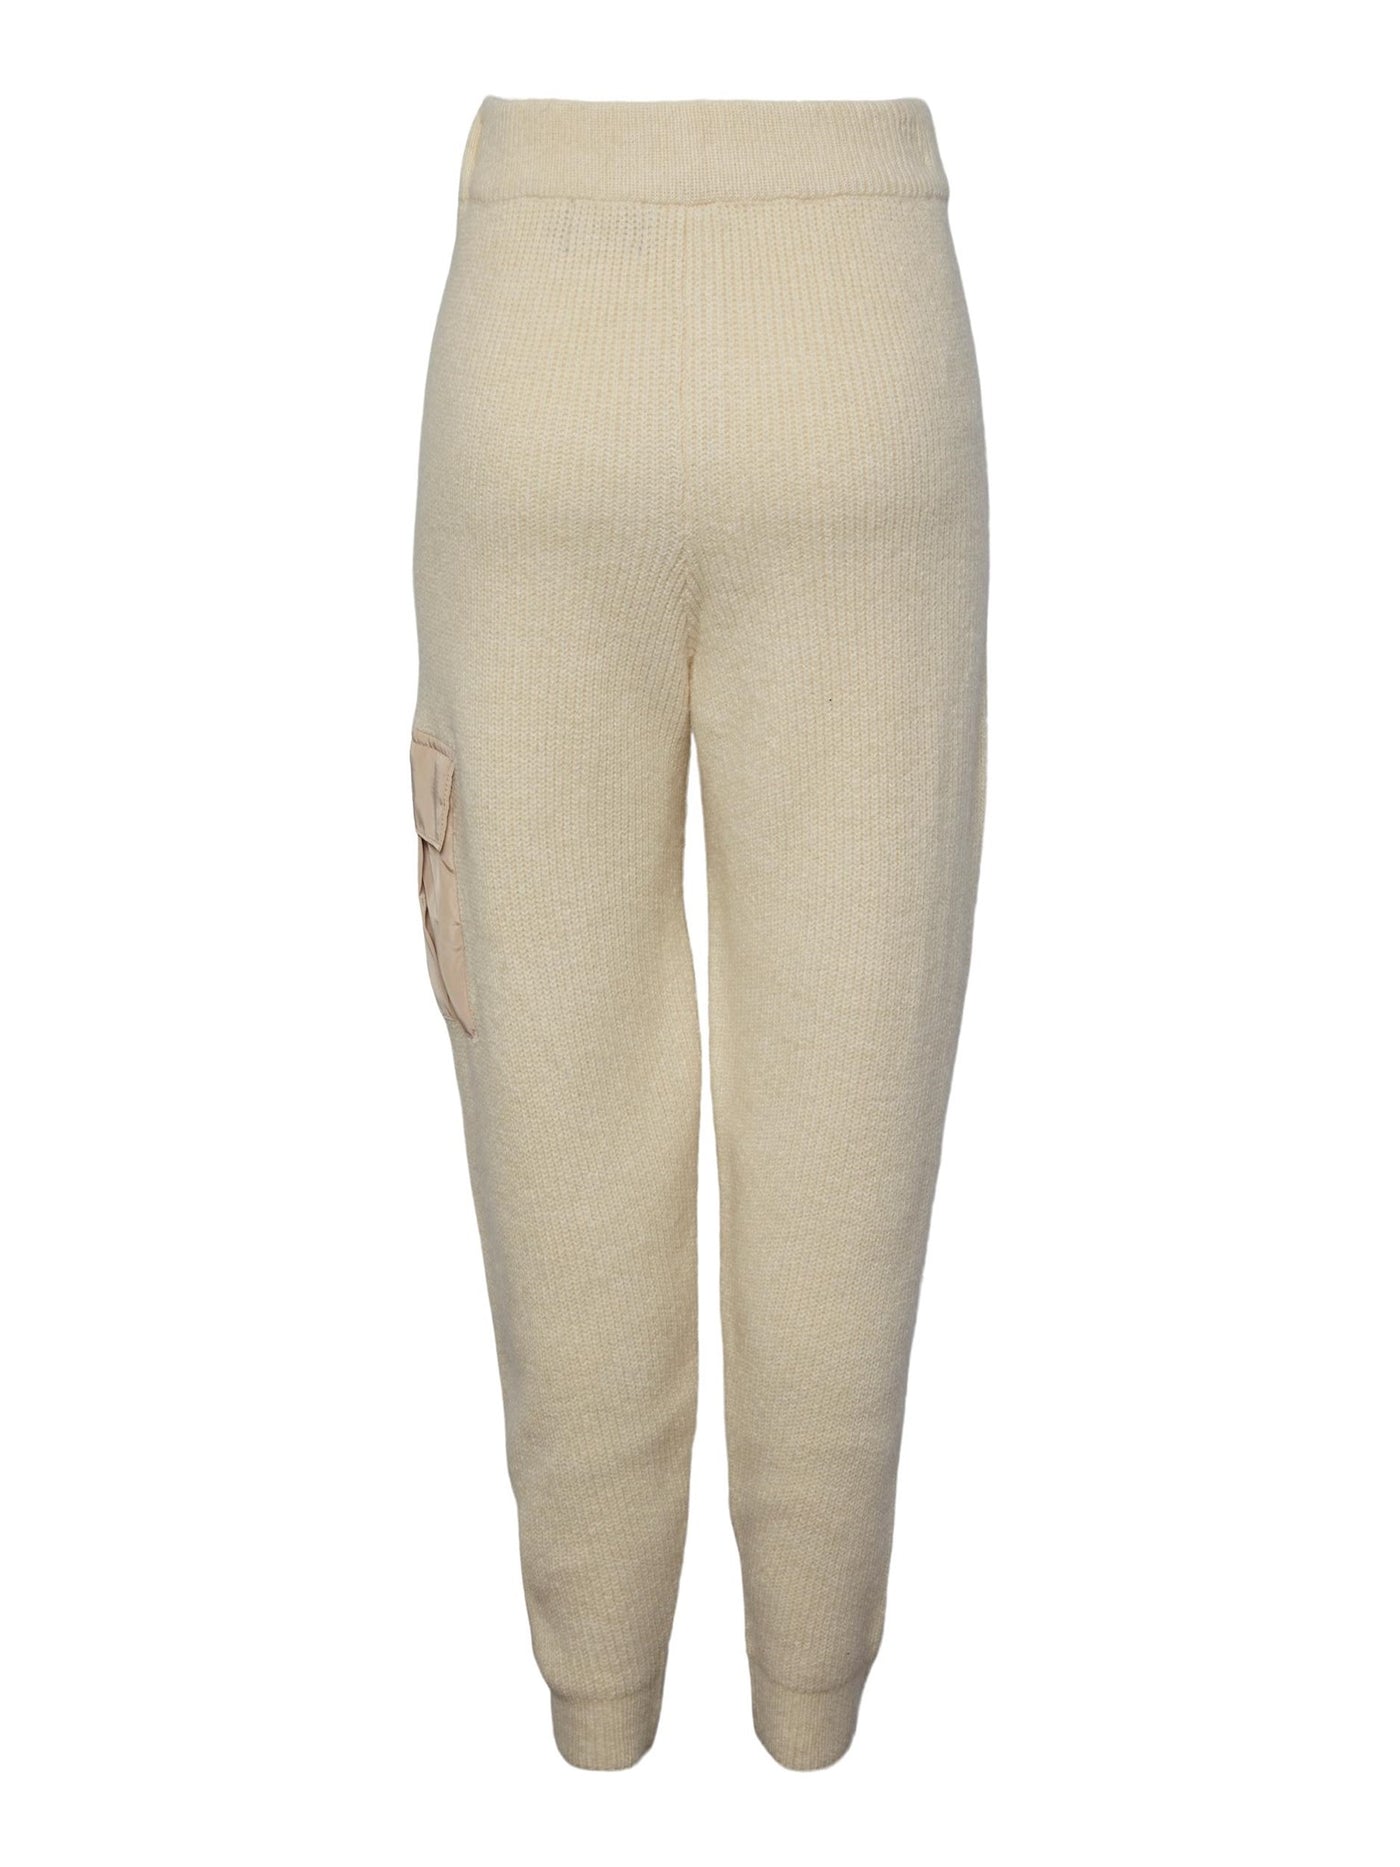 Naura Knit Pants - Antique White - PIECES - Vit 2